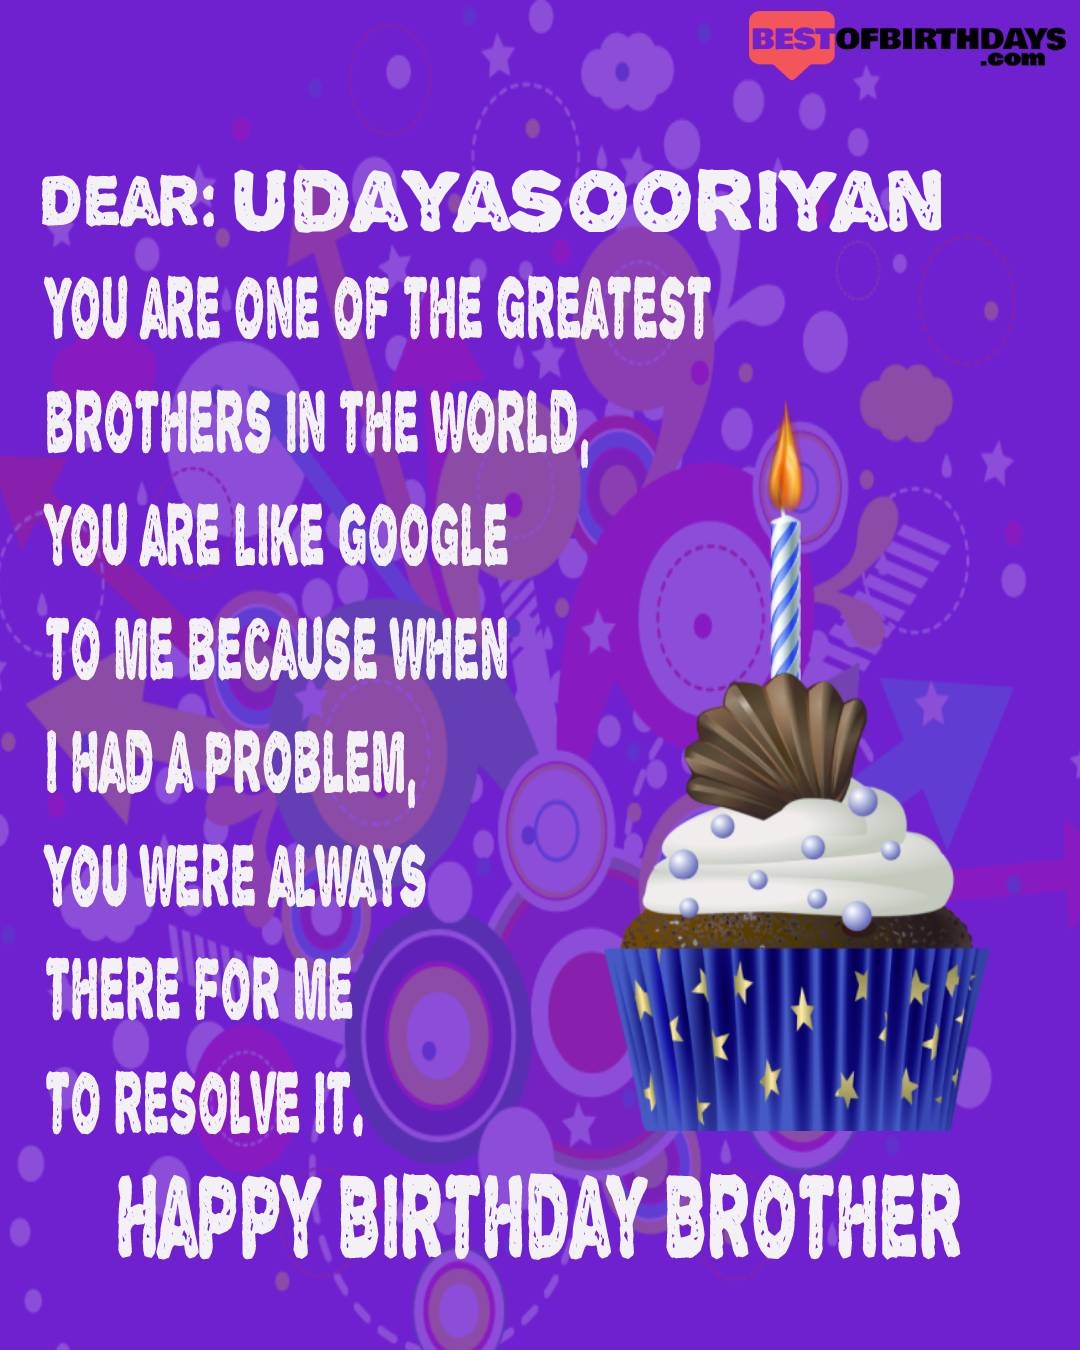 Happy birthday udayasooriyan bhai brother bro